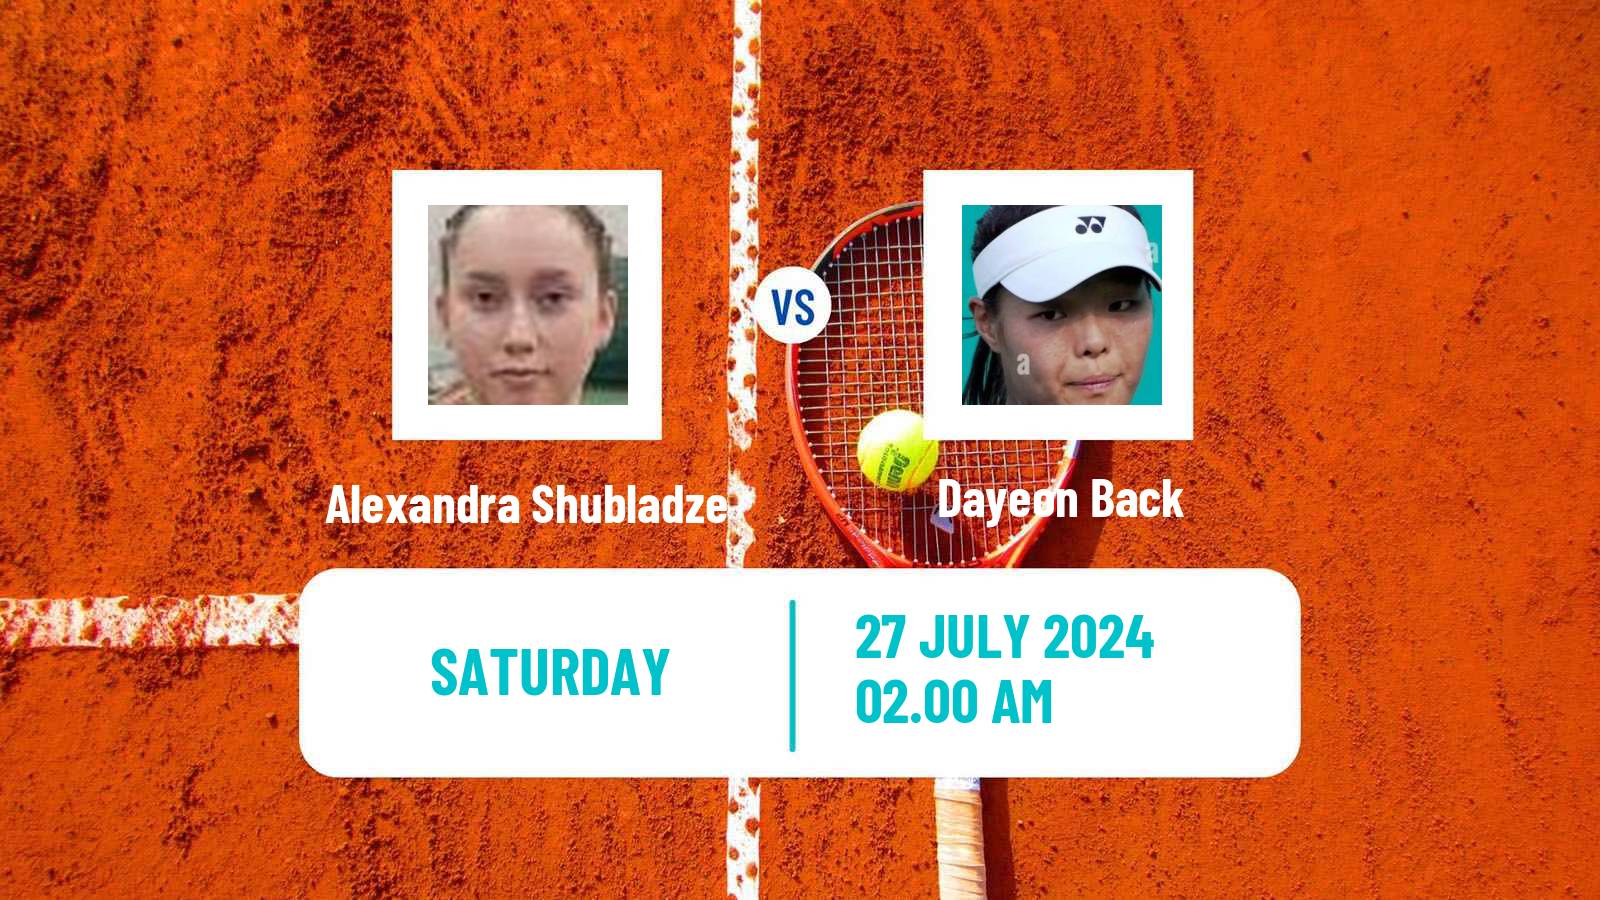 Tennis ITF W35 Astana Women Alexandra Shubladze - Dayeon Back